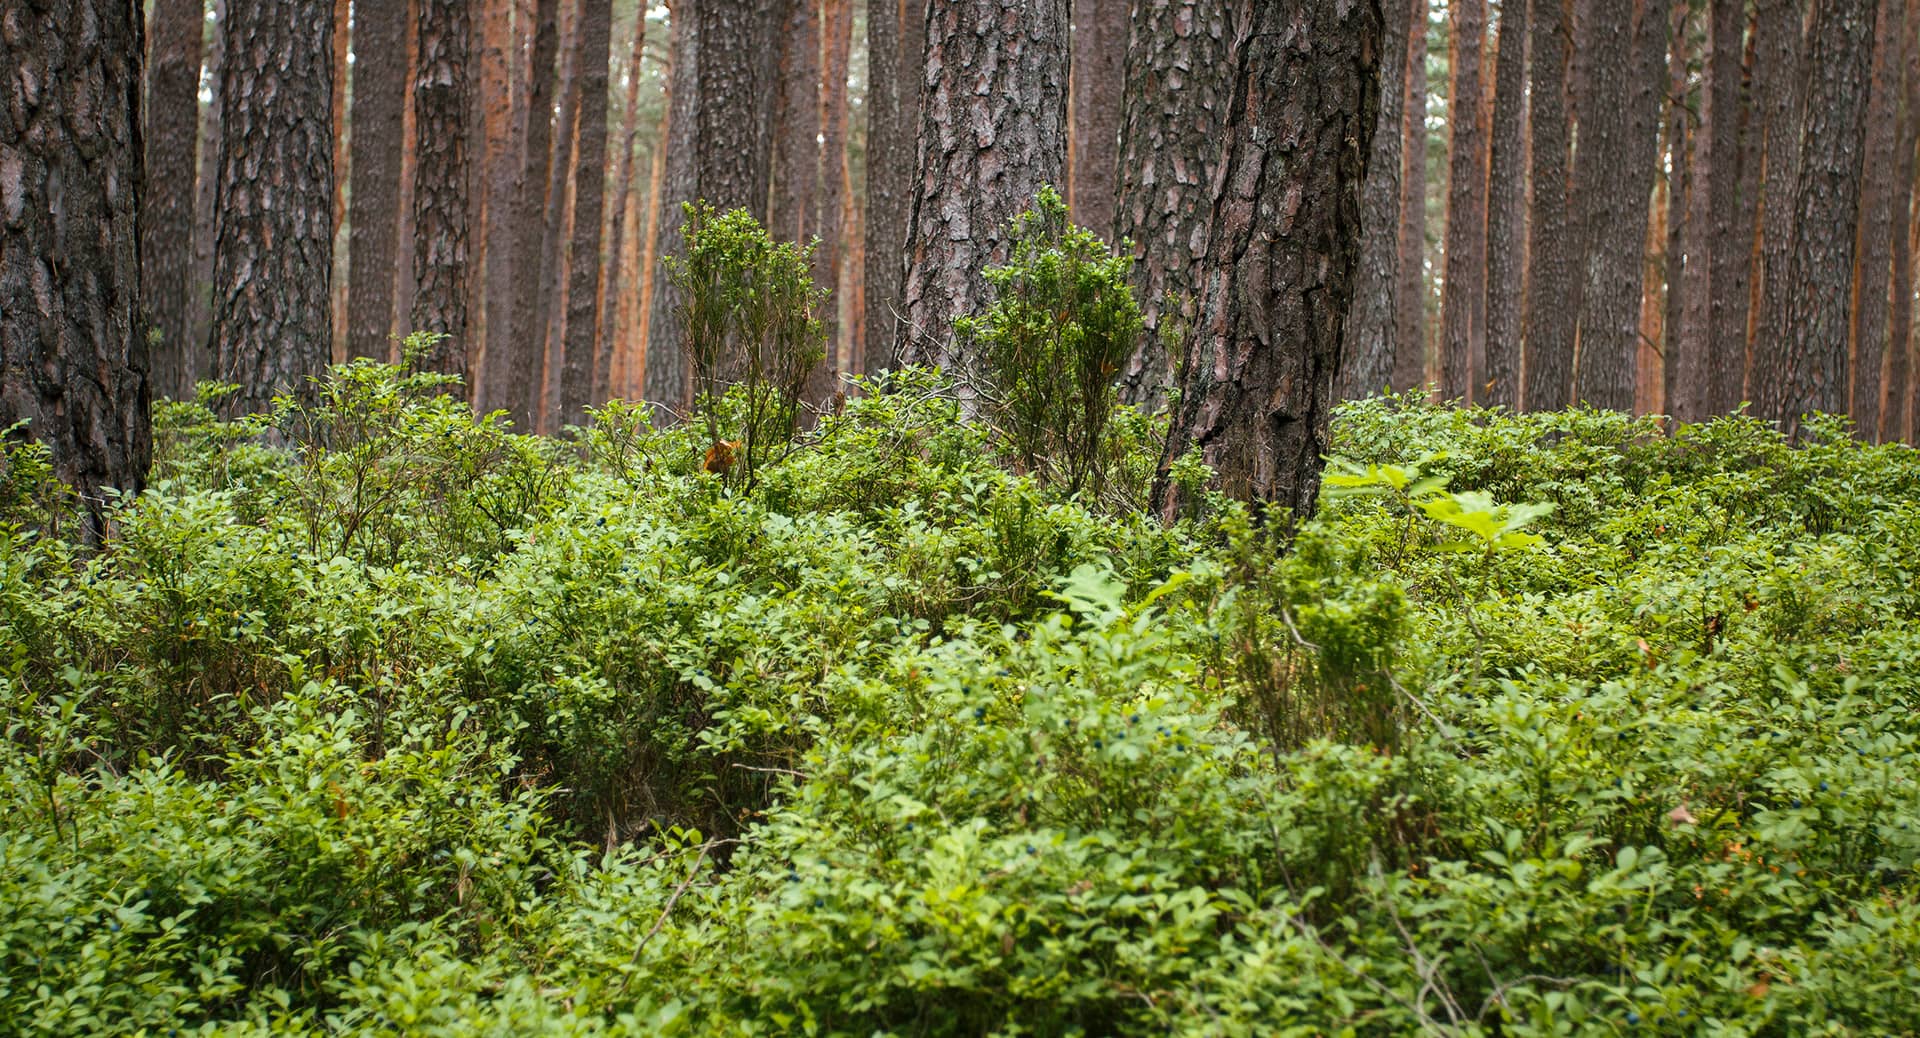 Waldboden im Kiefernwald bei Nürnberg mit einem Dickicht aus saftig grünen Heidelbeersträuchern im Juni